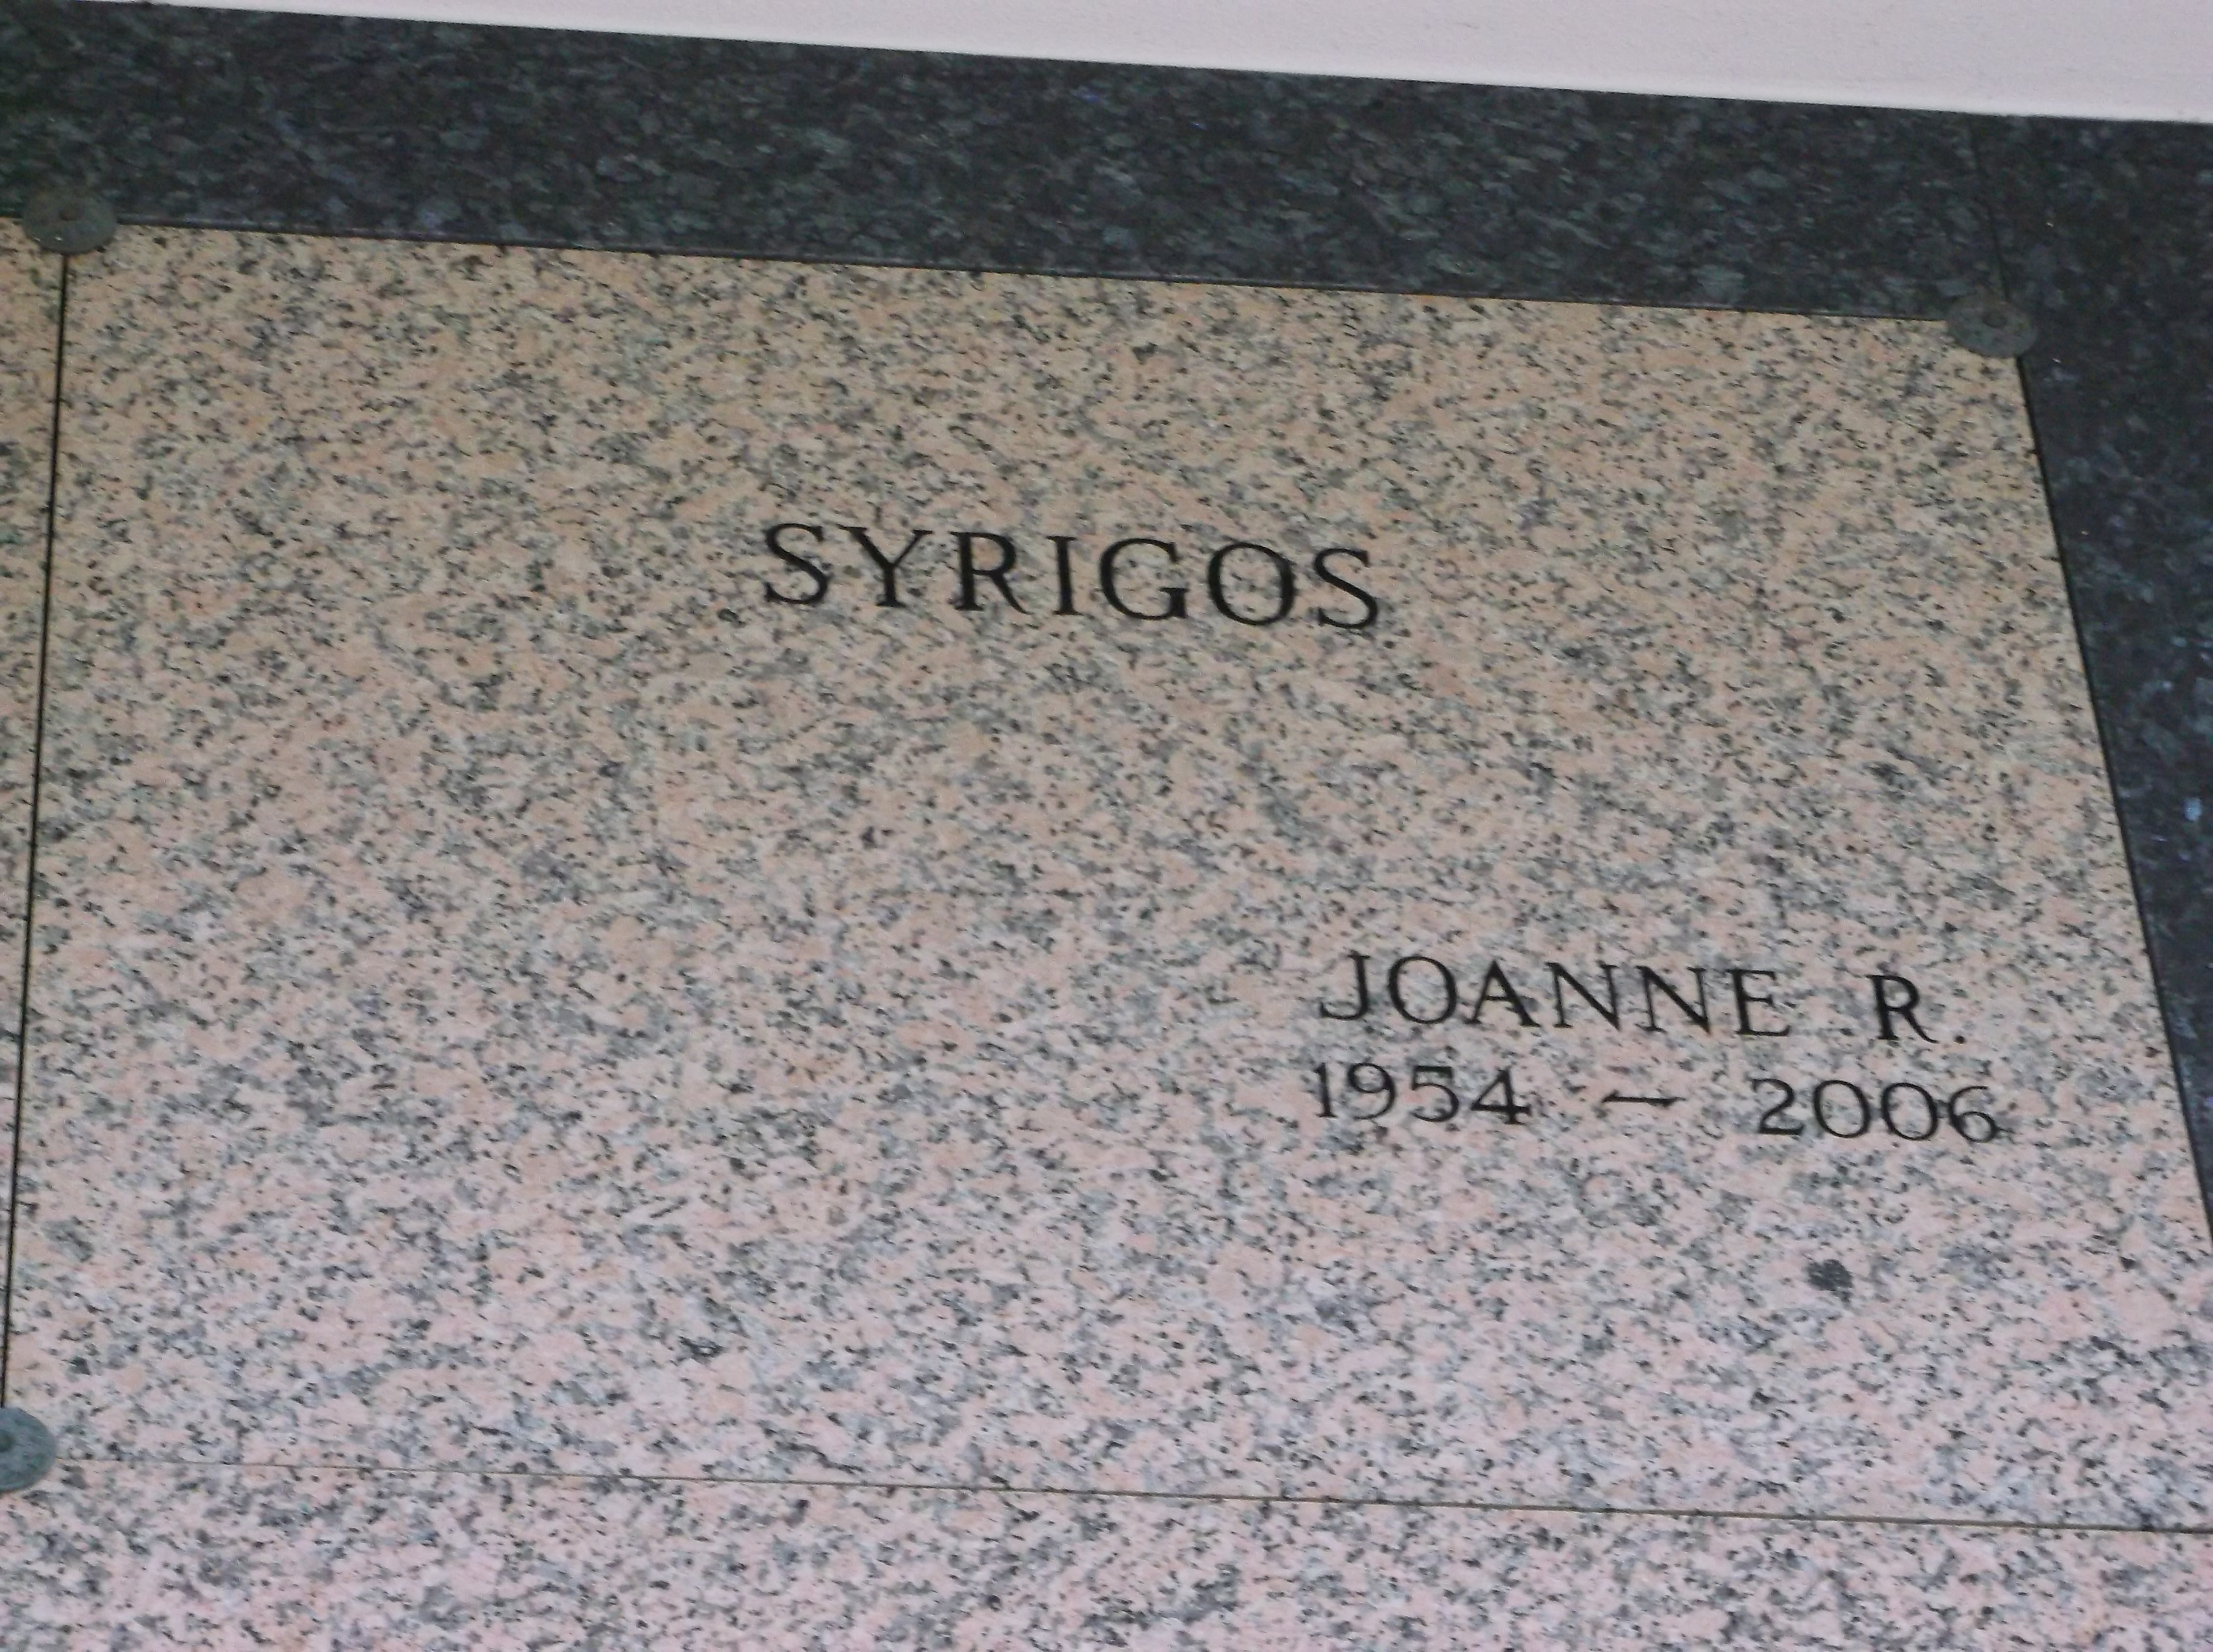 Joanne R Syrigos